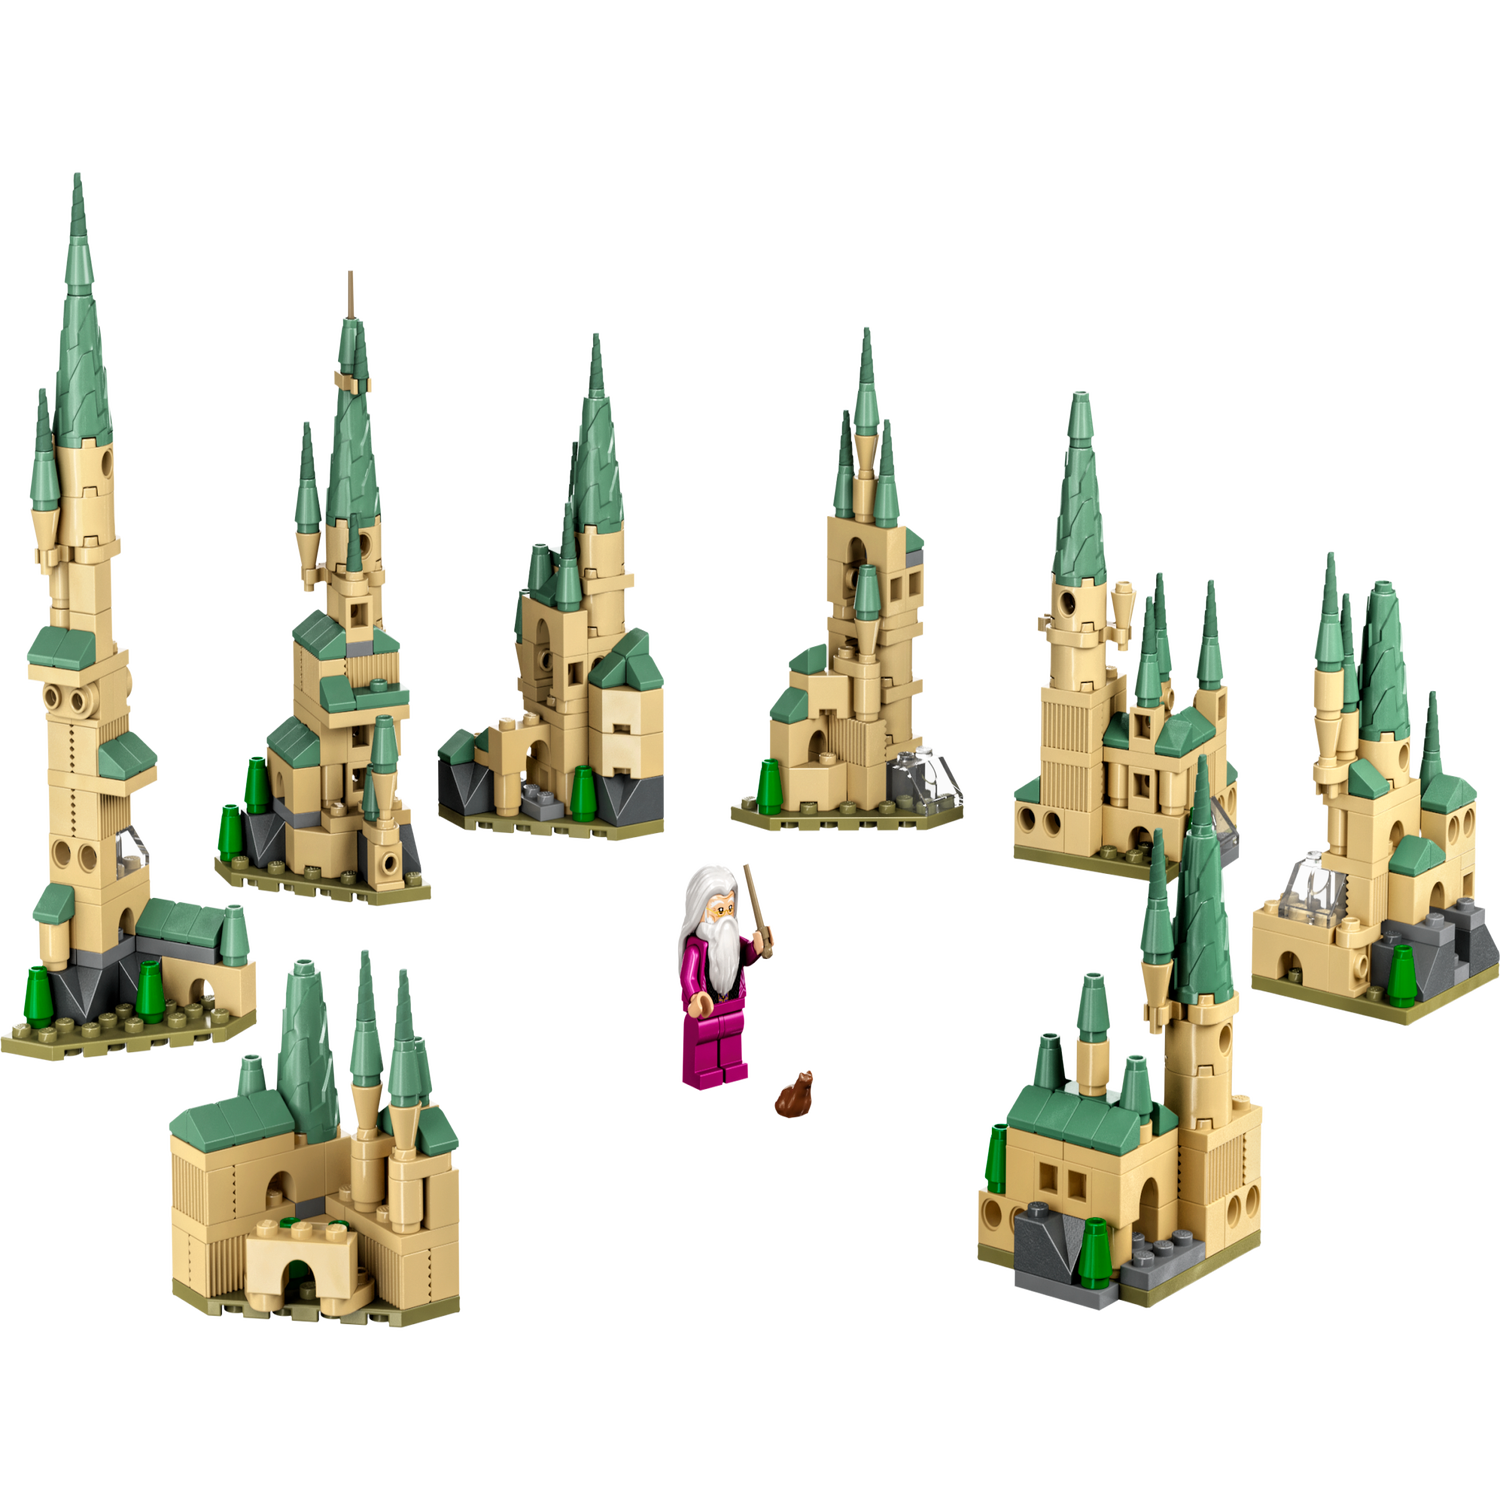 LEGO Hogwarts Castle Review and Guide - Brick Set Go